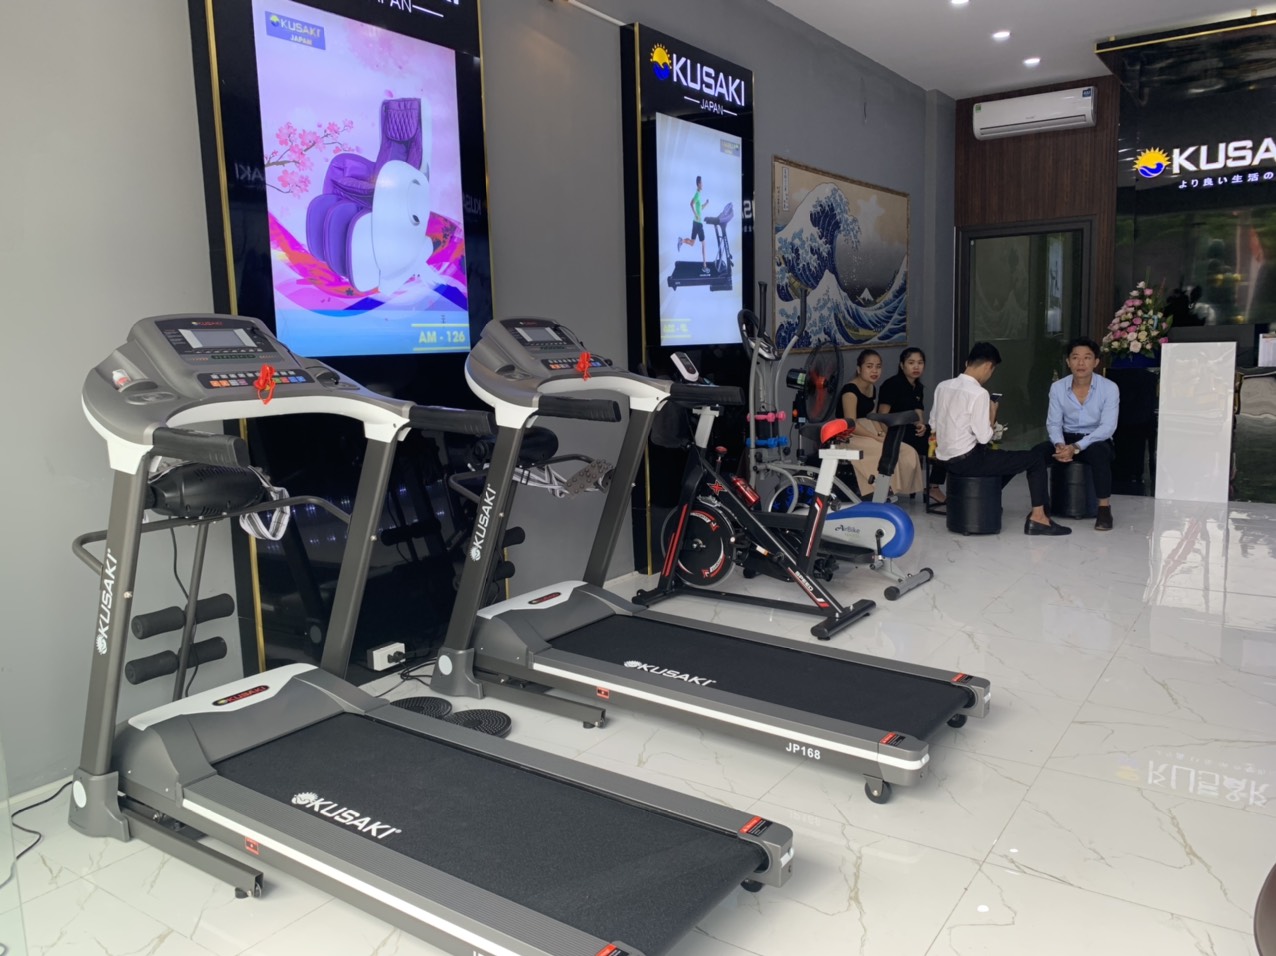 Okusaki Thanh Hóa - Địa chỉ bán ghế máy chạy bộ chính hãng giá tốt nhất tại Thanh Hóa 